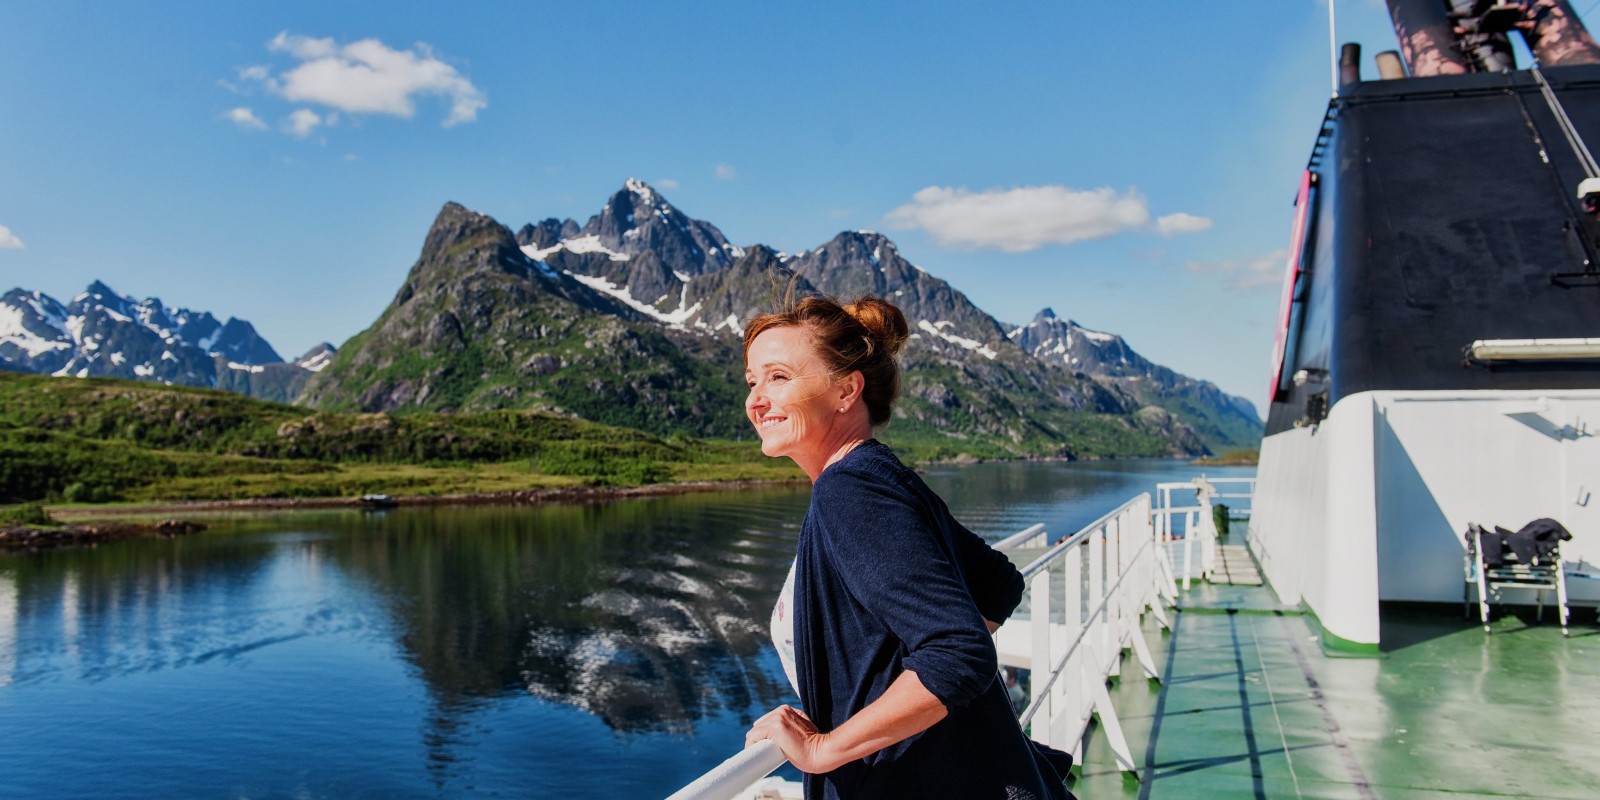 Reis alene langs norskekysten